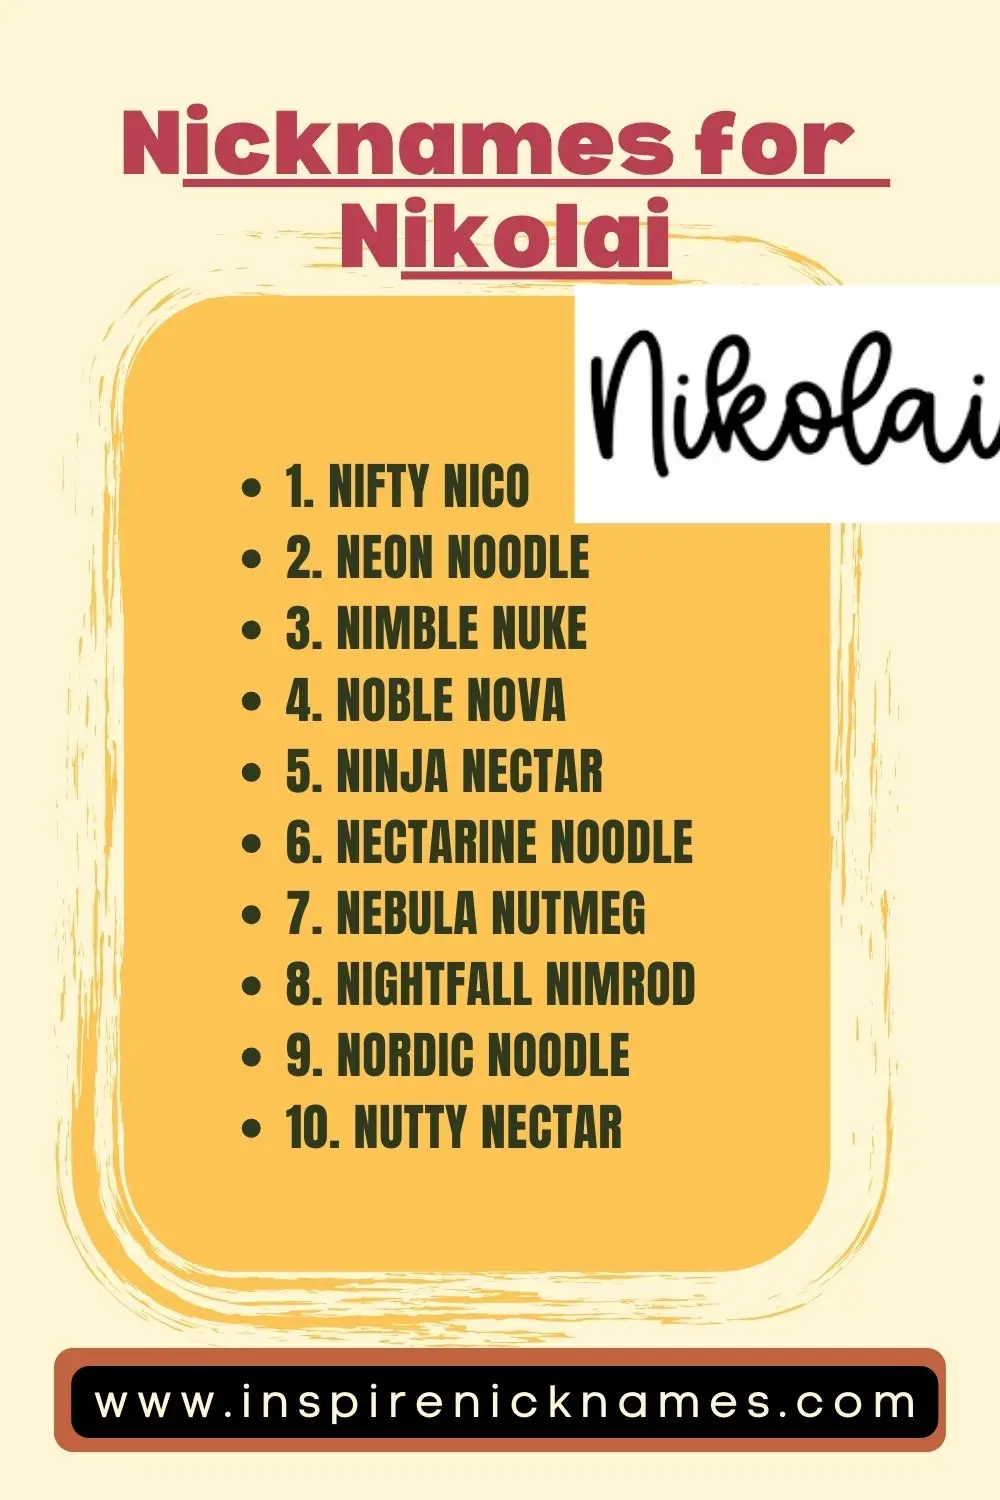 nicknames for Nicolai